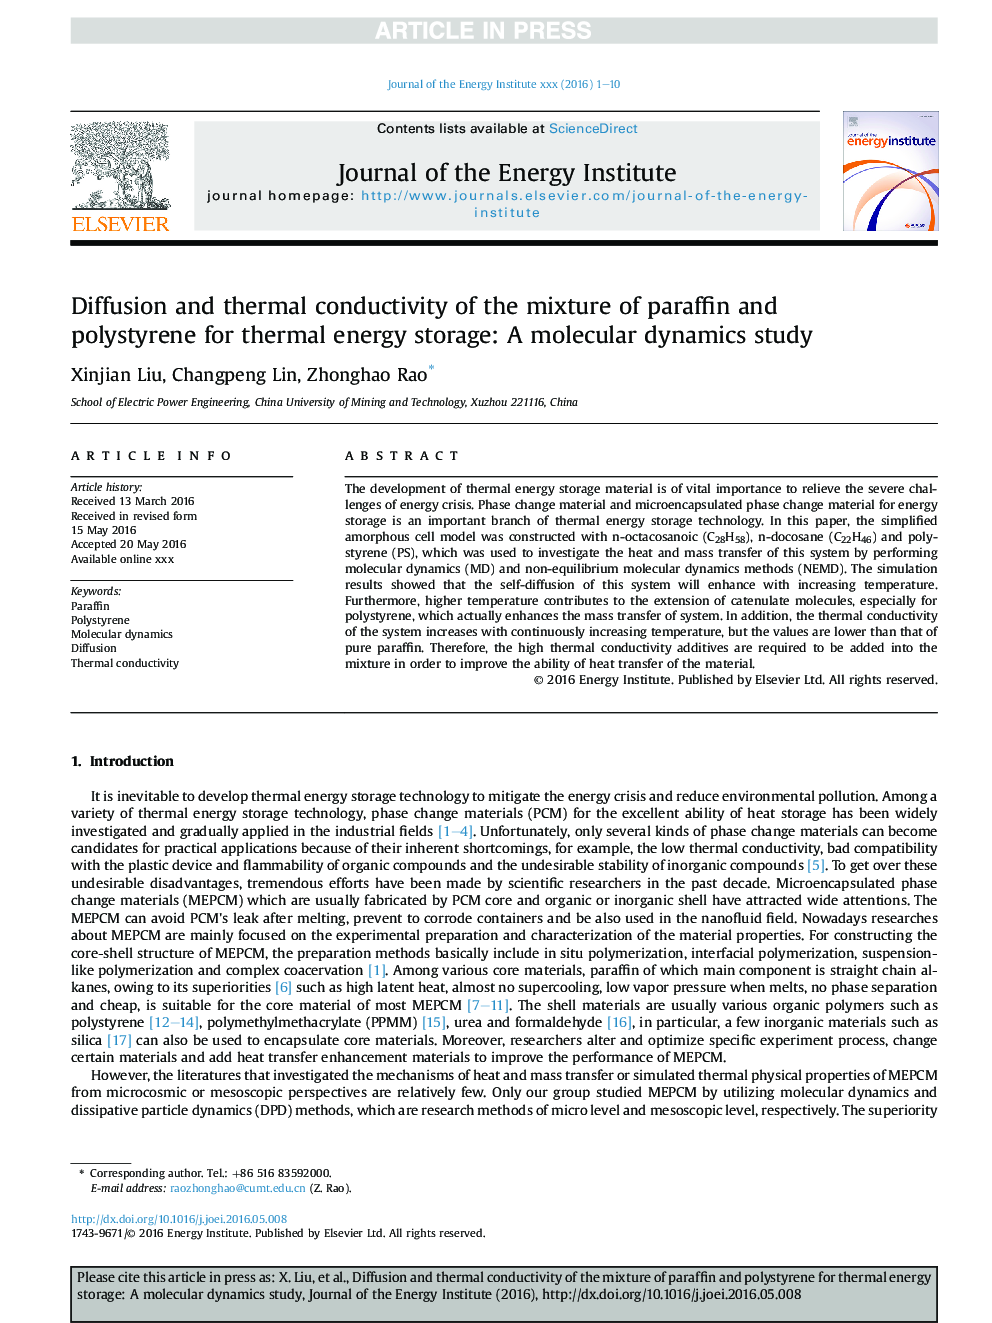 پخش و هدایت حرارتی مخلوط پارافین و پلی استایرن برای ذخیره انرژی حرارتی: مطالعه دینامیک مولکولی 